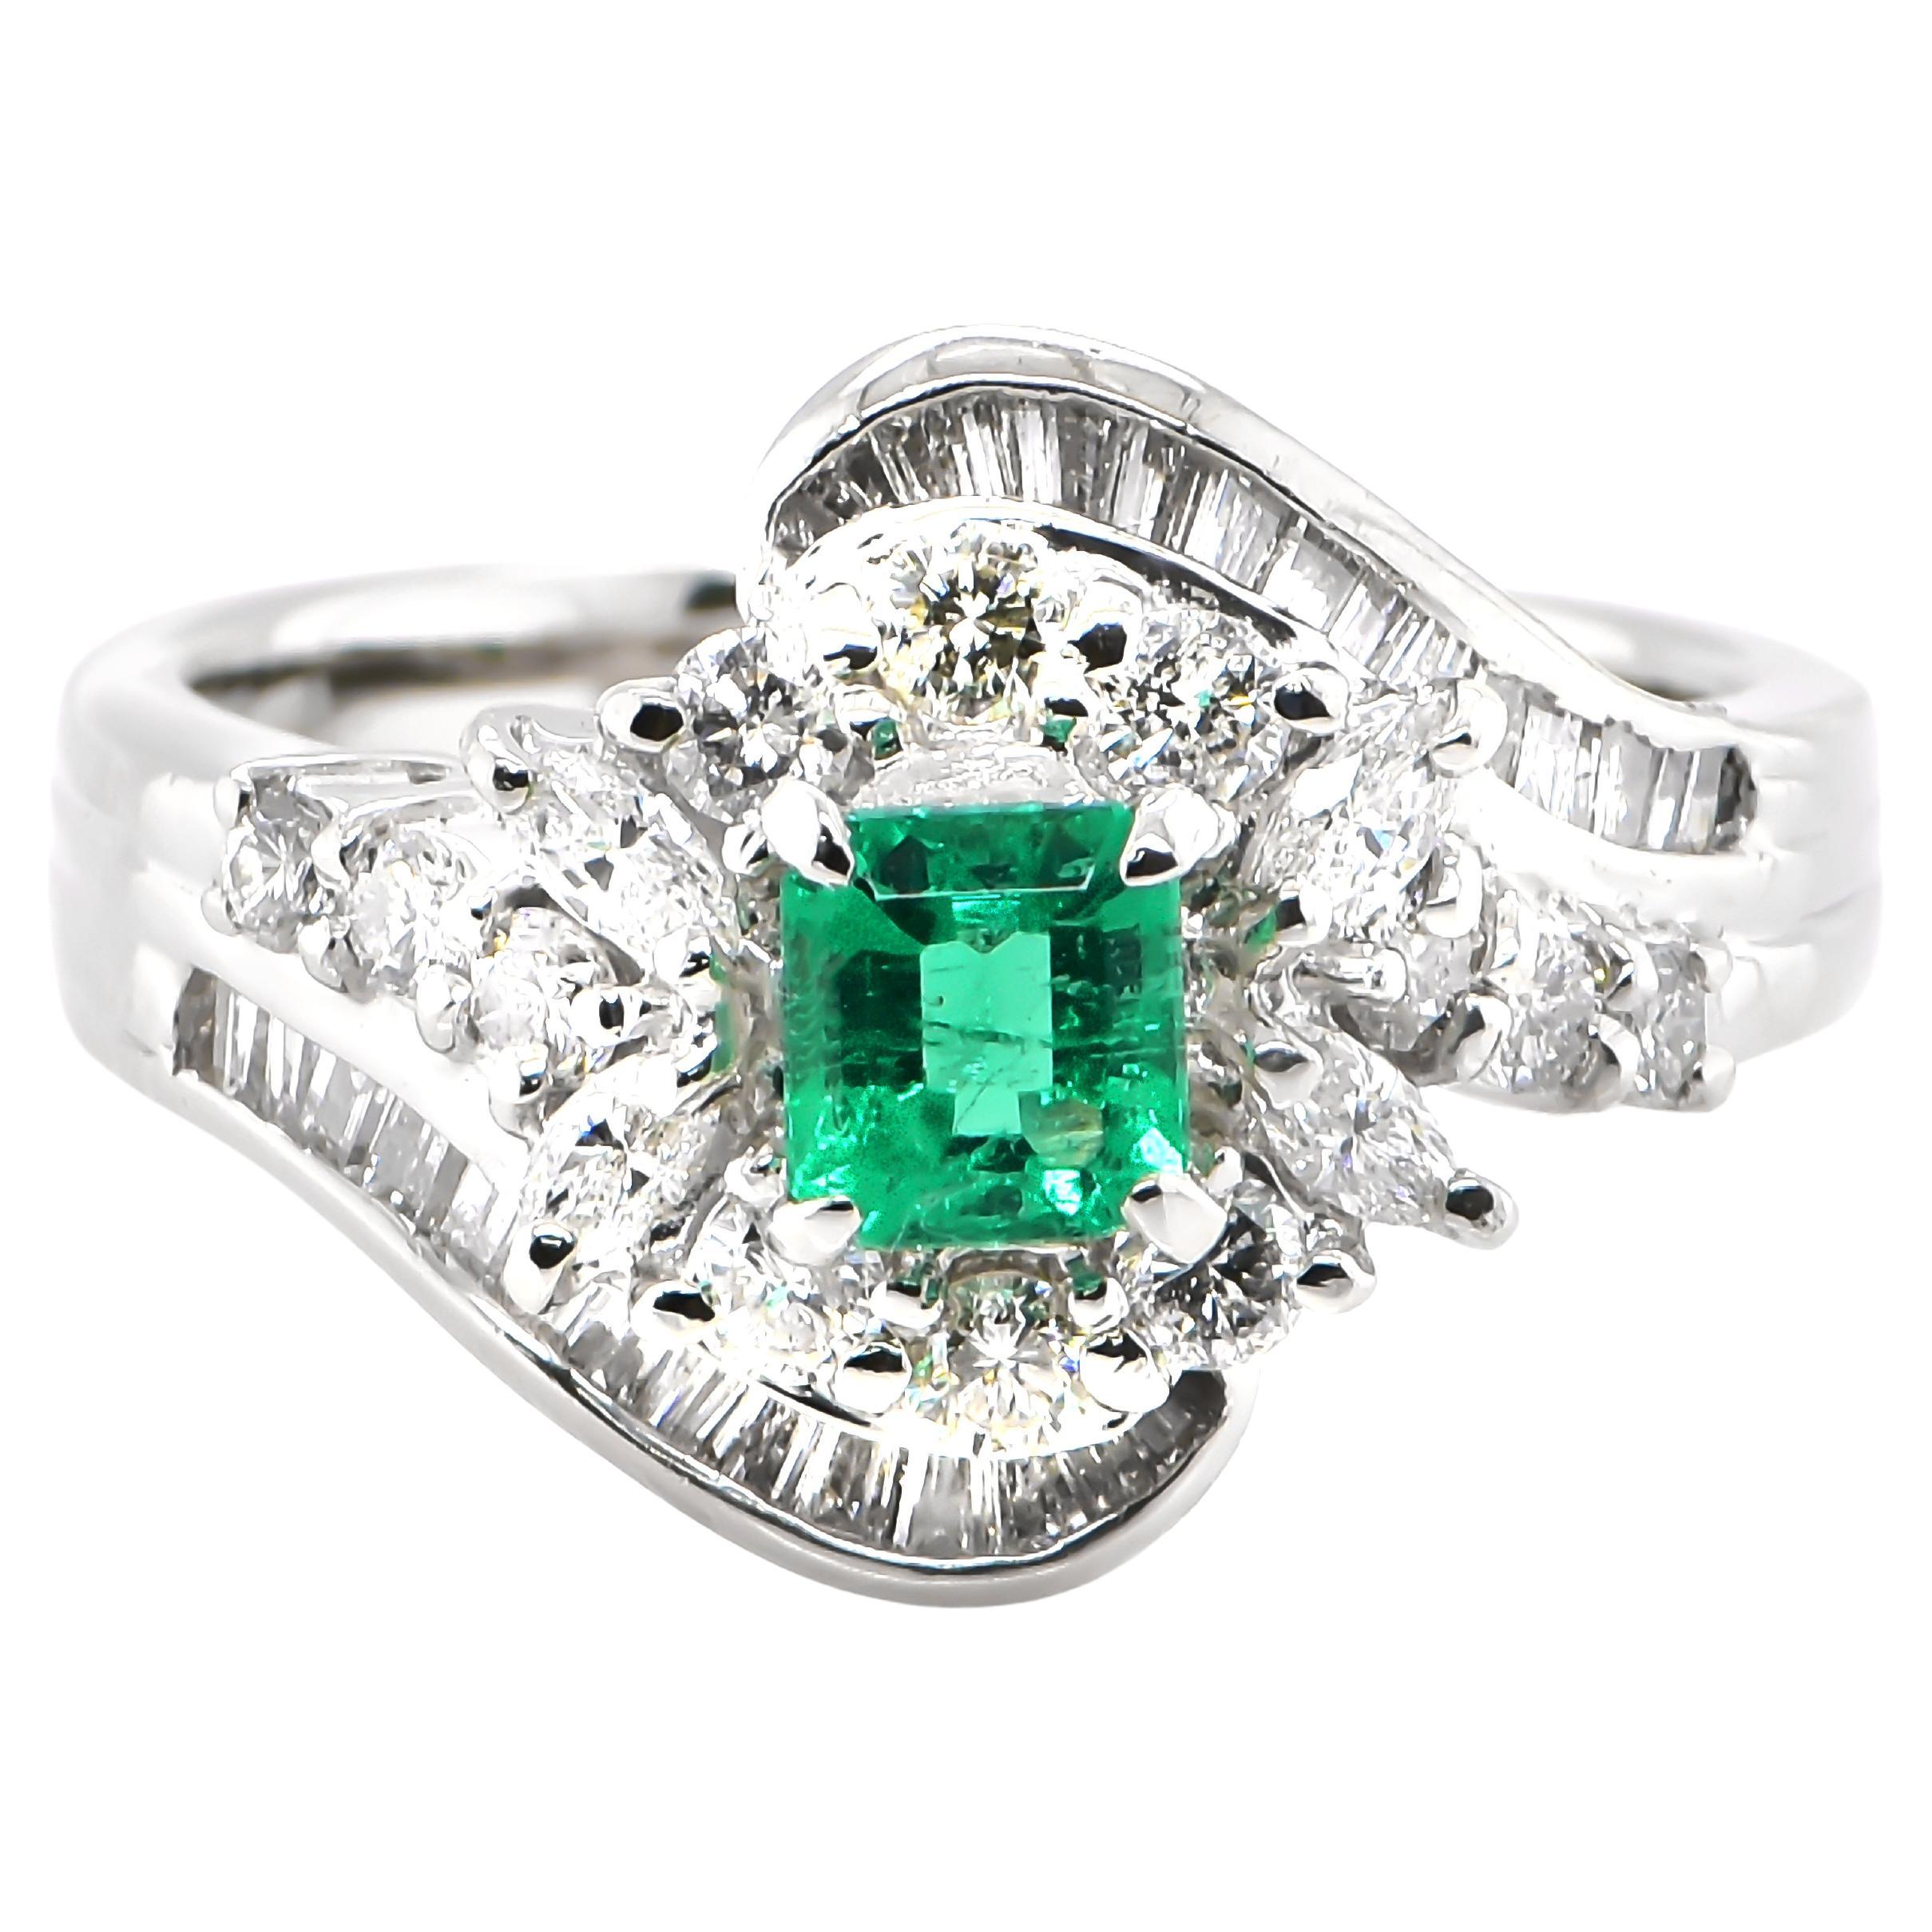 0.42 Carat Nature Vivid Diamonds & Emerald Cocktail Ring Made in Platinum